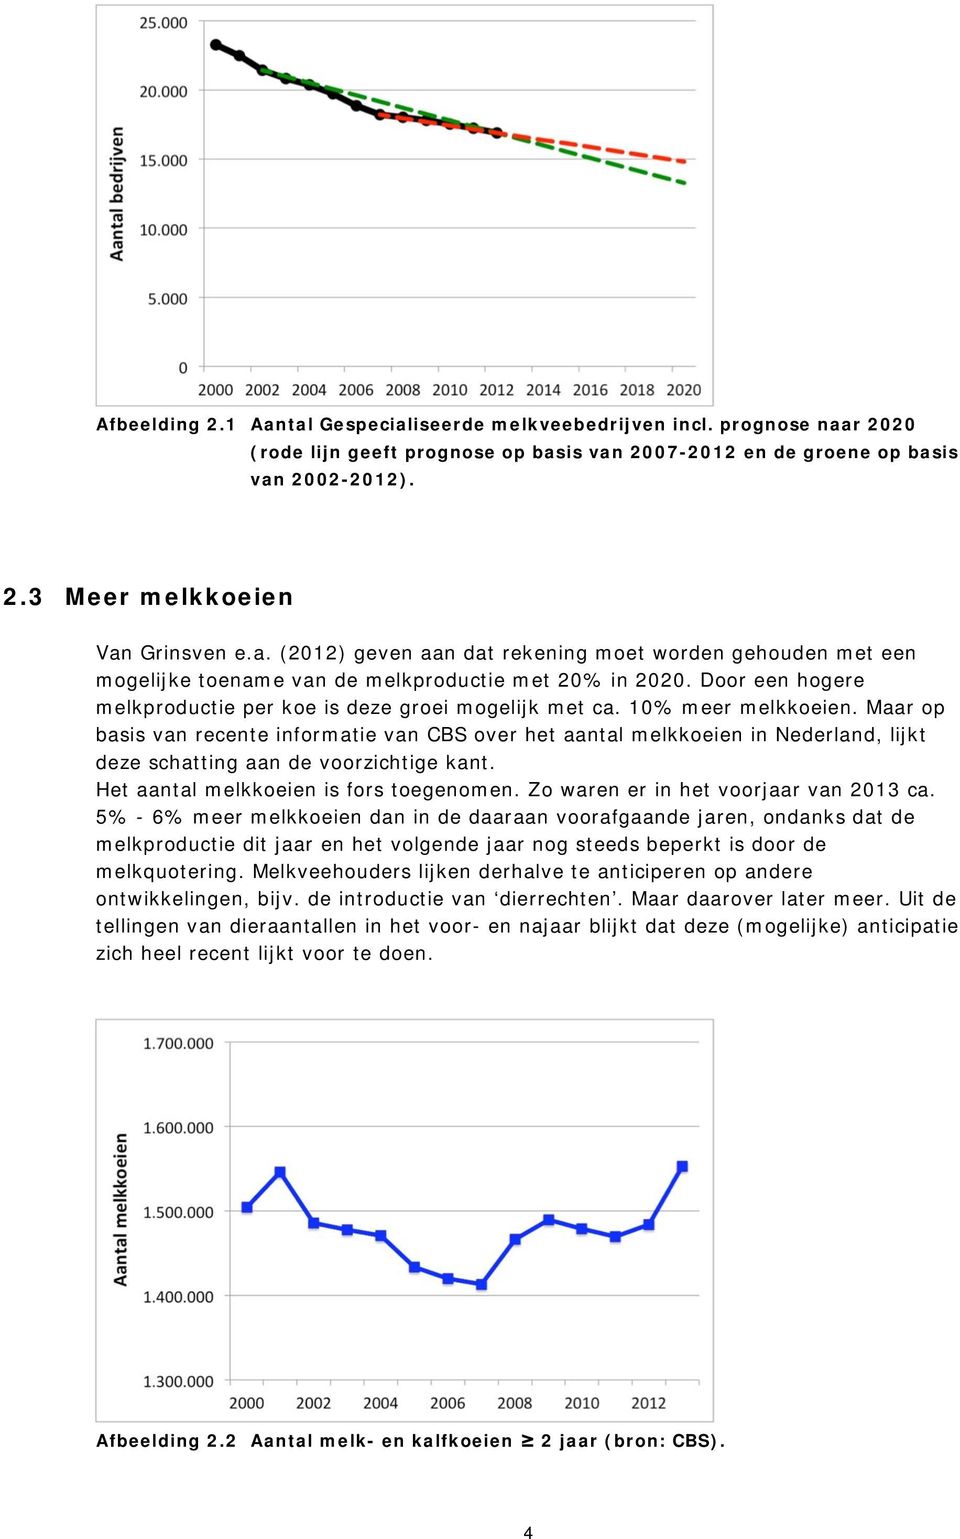 10% meer melkkoeien. Maar op basis van recente informatie van CBS over het aantal melkkoeien in Nederland, lijkt deze schatting aan de voorzichtige kant. Het aantal melkkoeien is fors toegenomen.